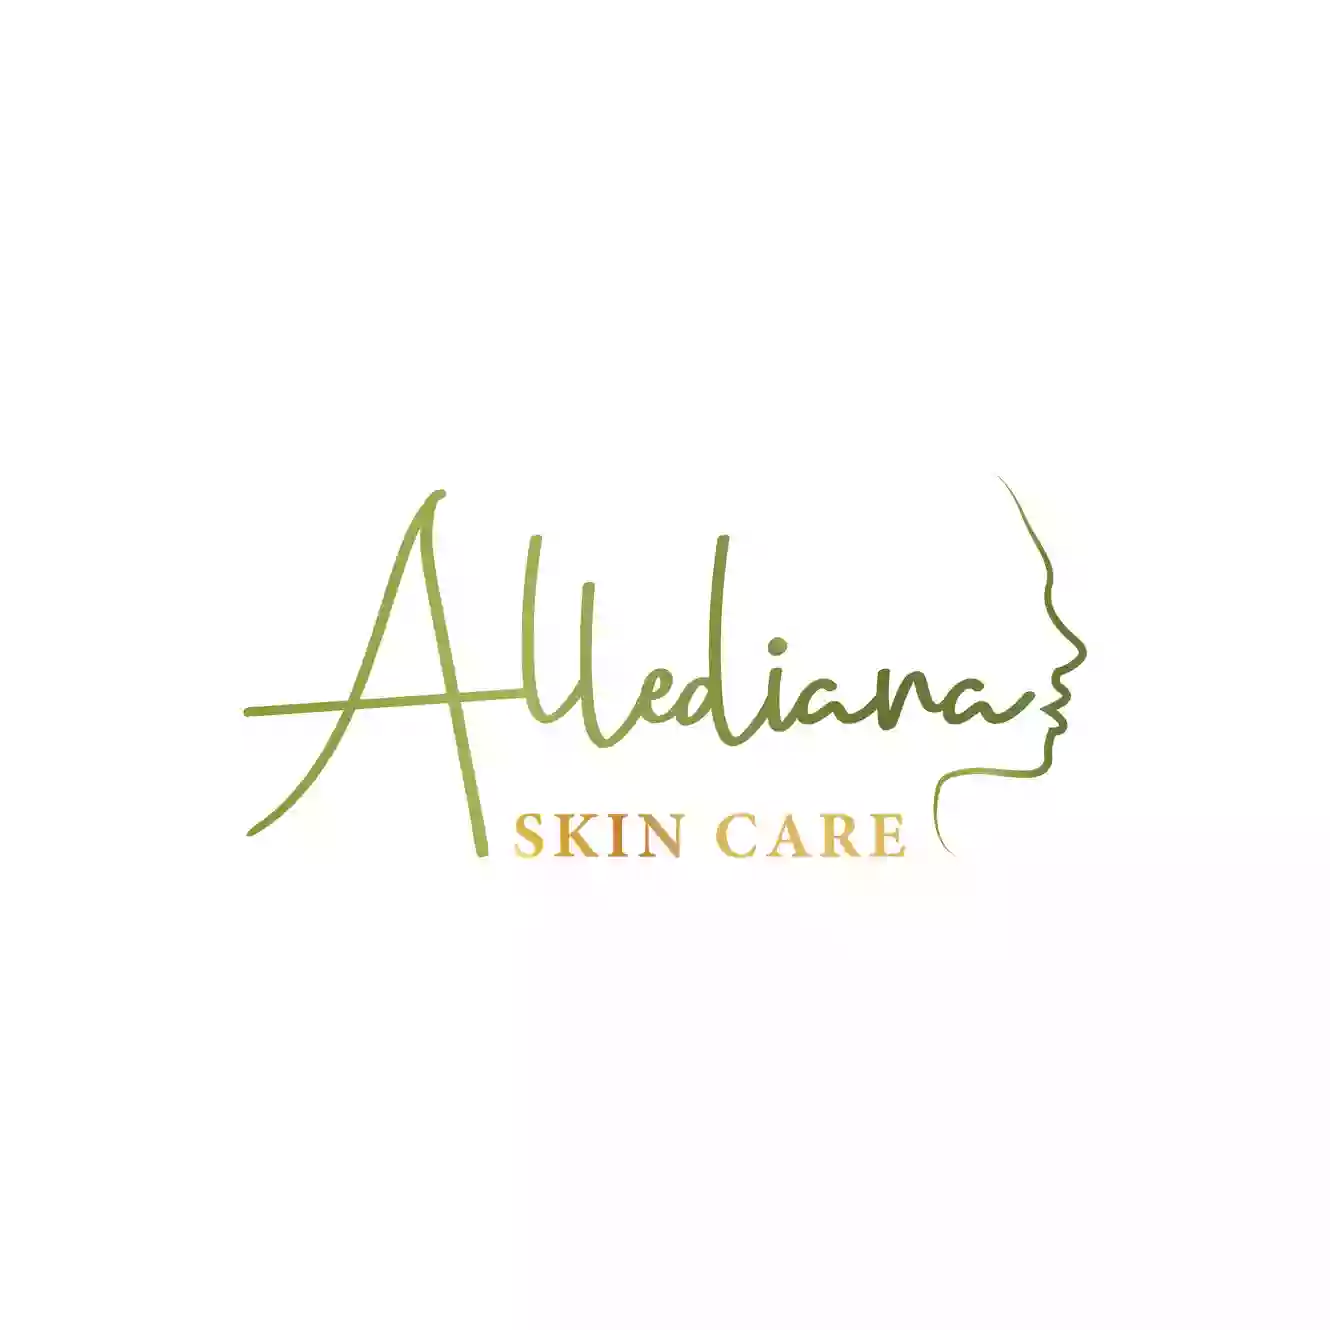 Allediana Skin Care